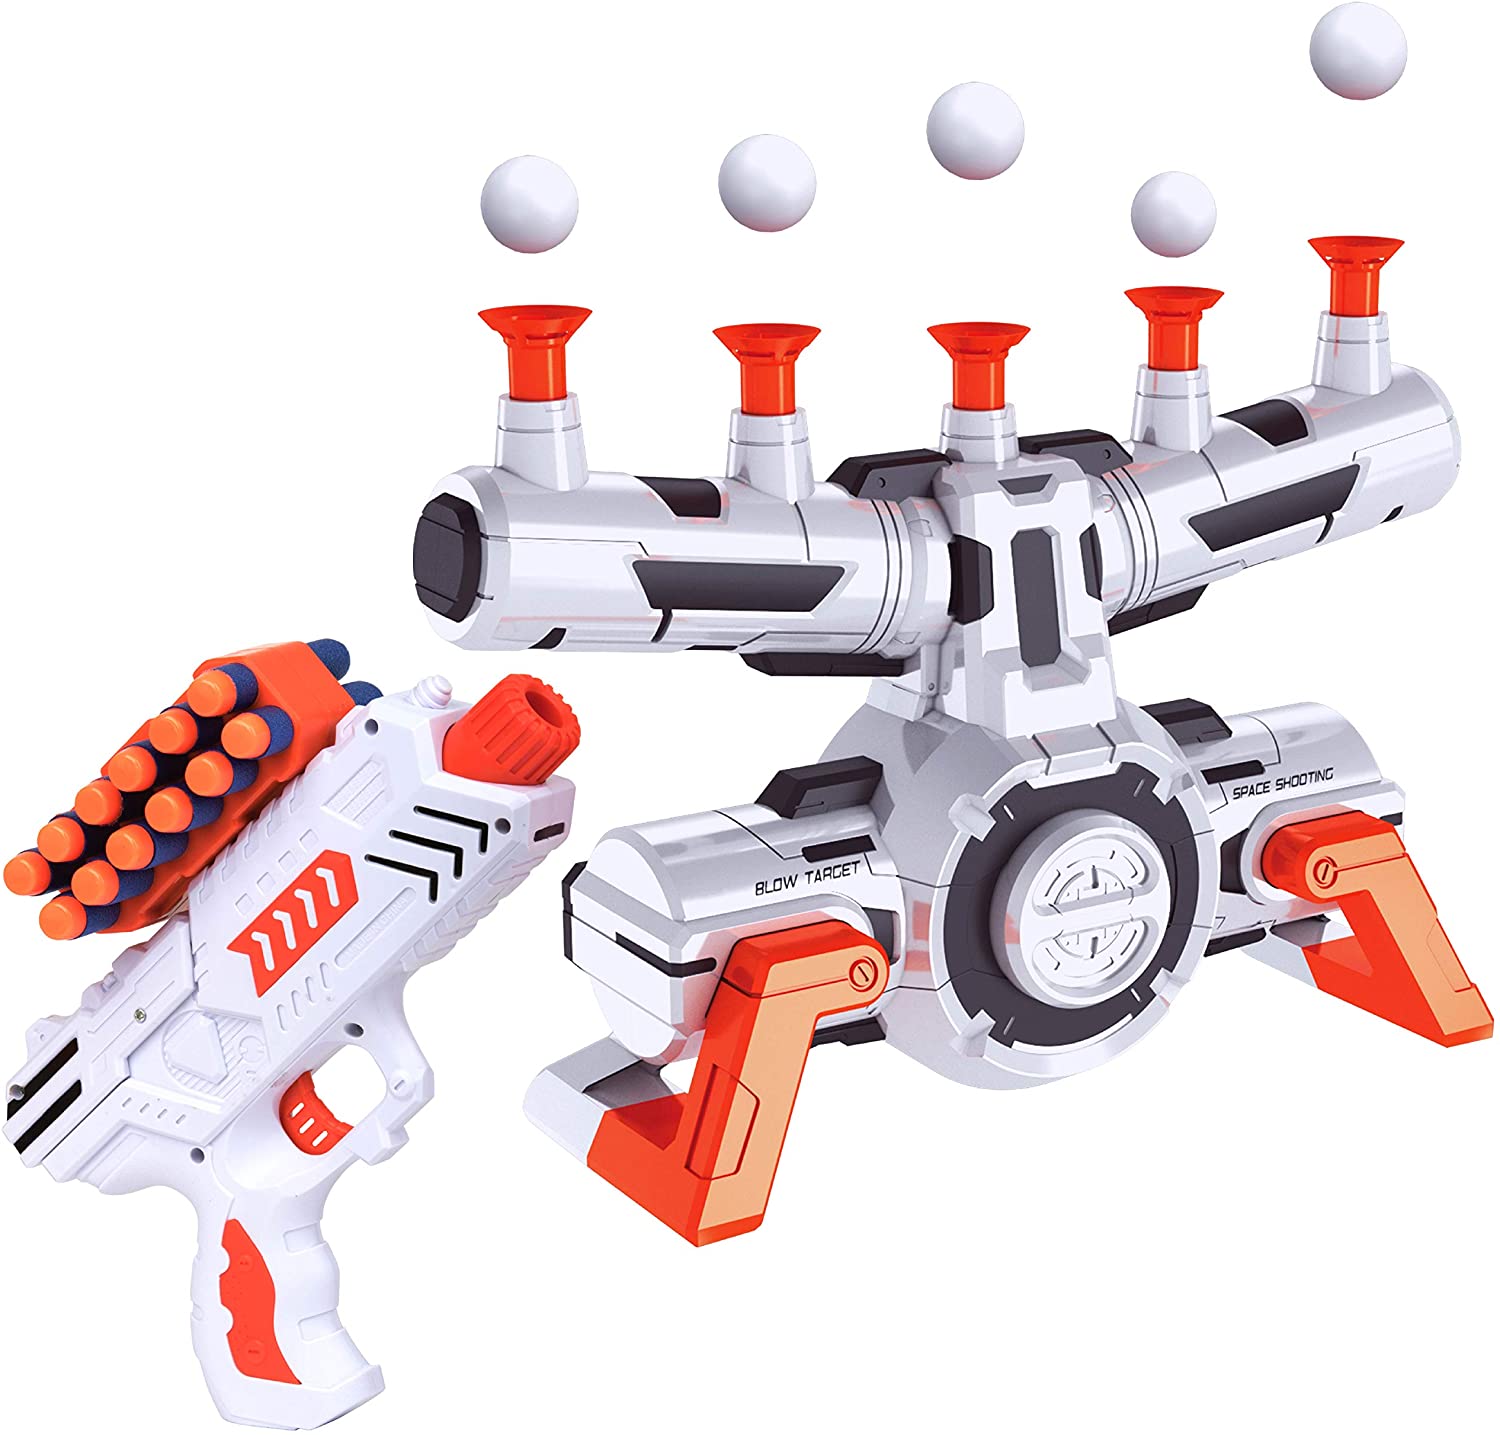 toy gun target practice